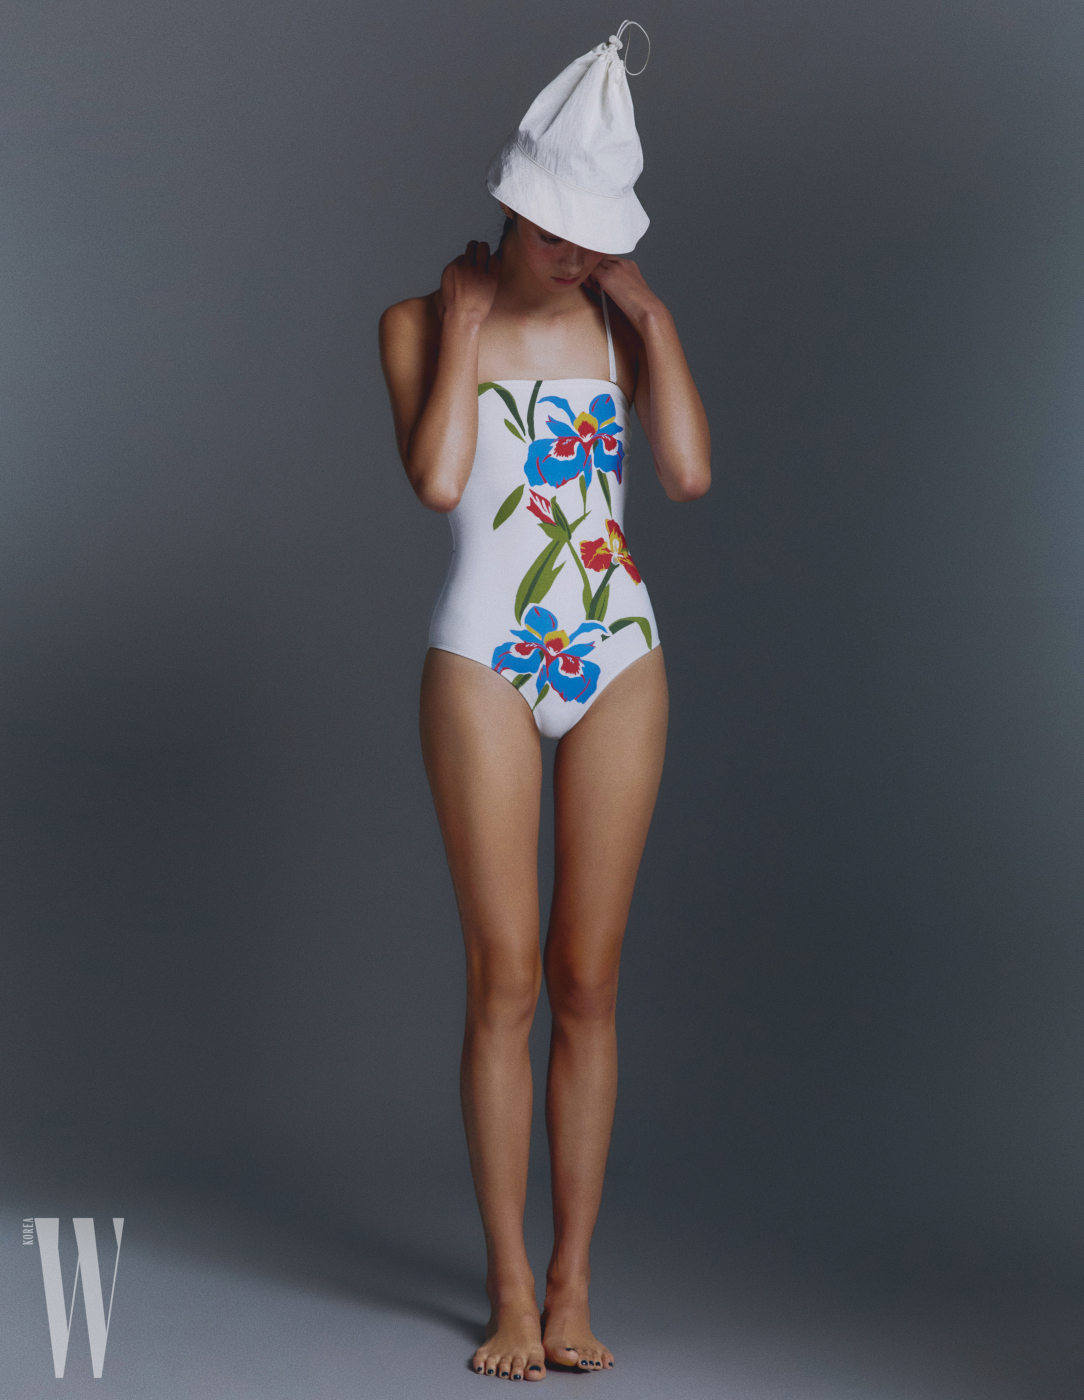 모자는 할로미늄 제품. 5만원. 꽃무늬 수영복은 토리 버치 제품. 31만8천원.